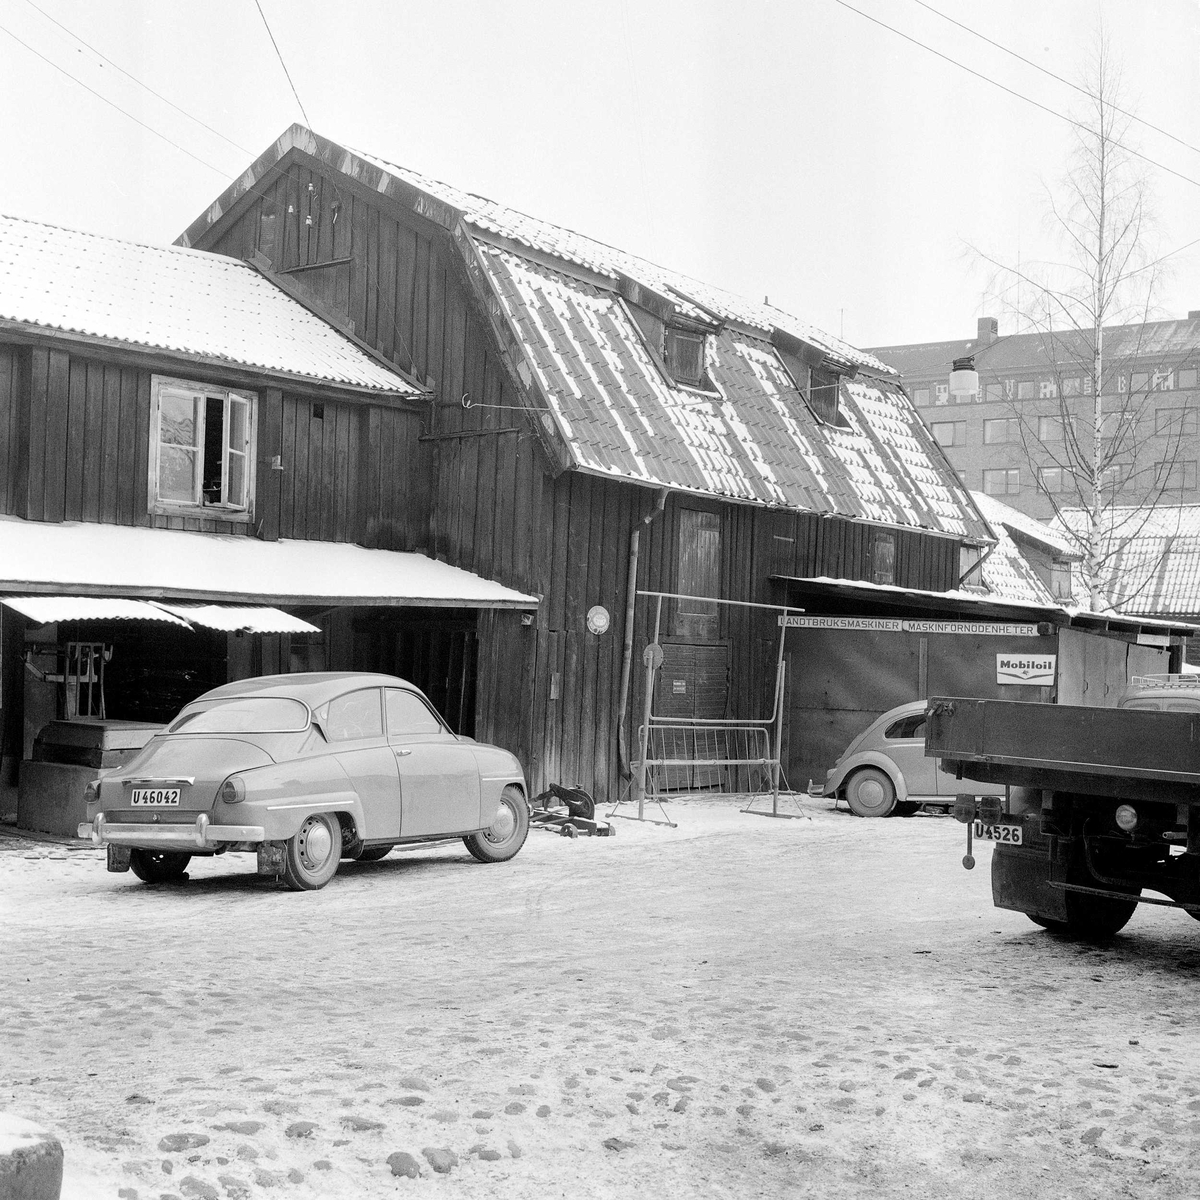 Del av bakgården. Den så kallade "Hållstugan" mitt i bild flyttades till Vallby friluftsmuseum (även "Magasinet" flyttades dit). Övriga byggnader revs ca 1965 - 1968 för att ge plats åt varuhuset Punkt. Vy mot sydost